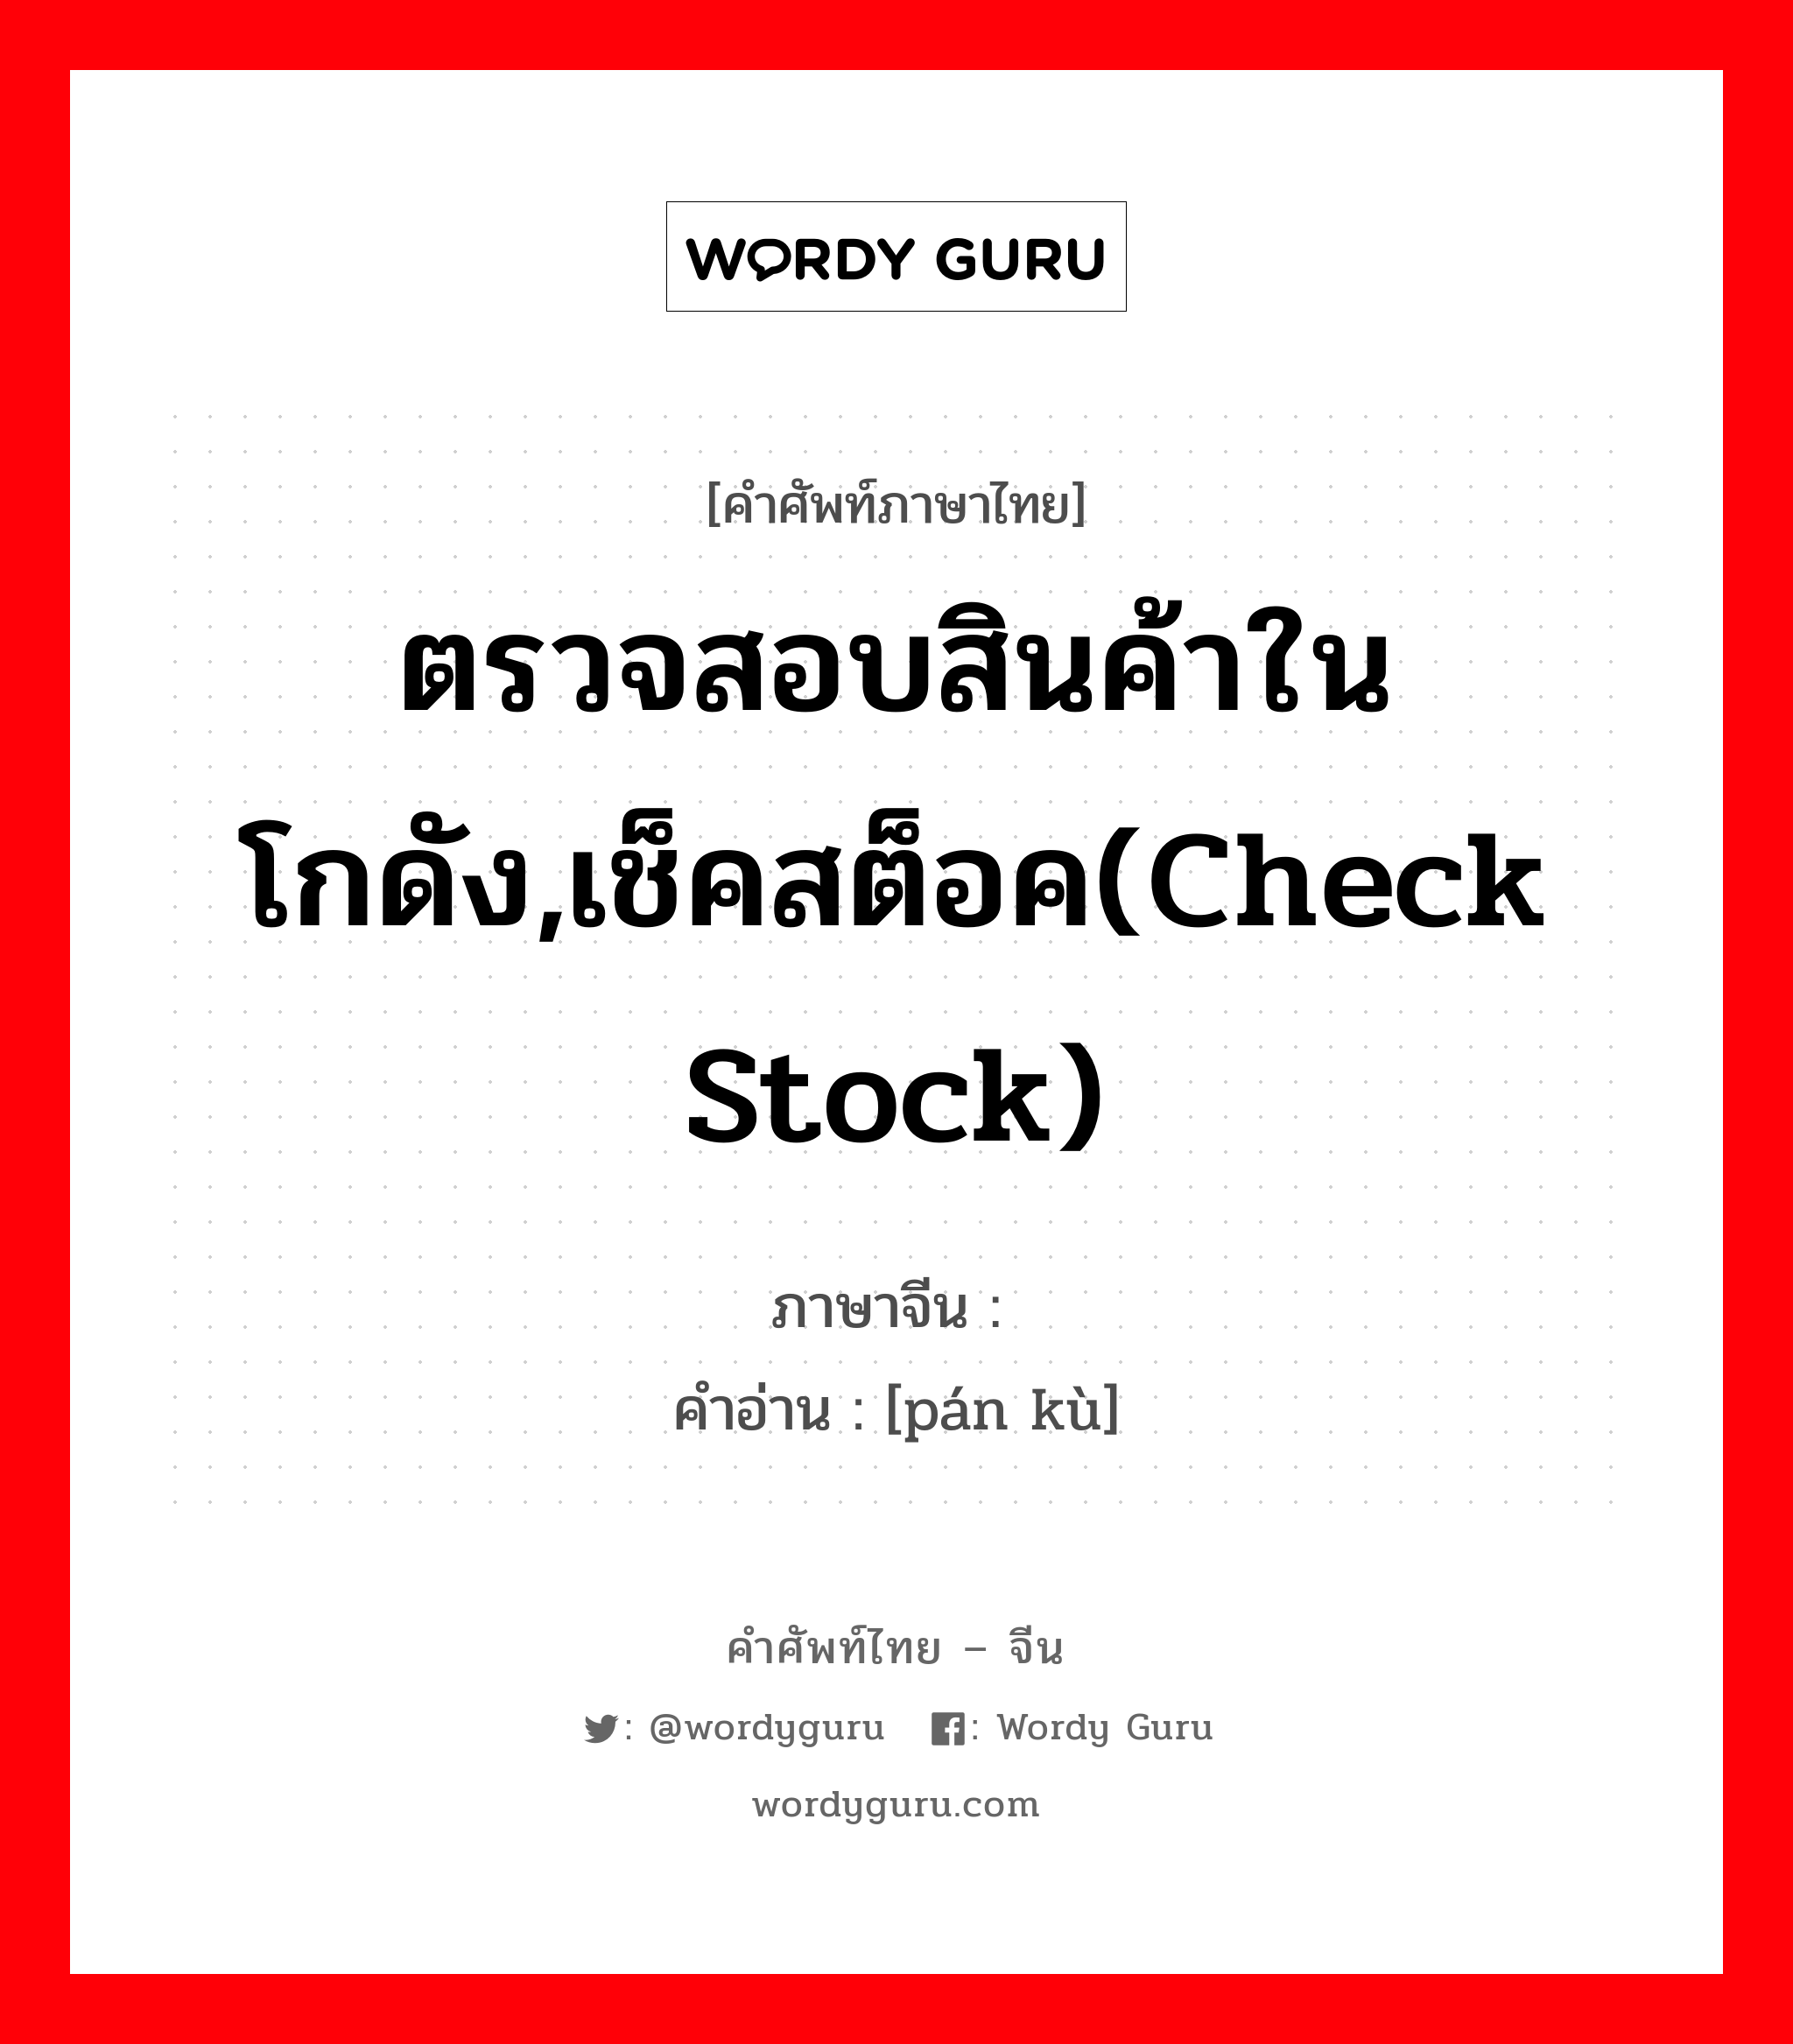 ตรวจสอบสินค้าในโกดัง,เช็คสต็อค(check stock) ภาษาจีนคืออะไร, คำศัพท์ภาษาไทย - จีน ตรวจสอบสินค้าในโกดัง,เช็คสต็อค(check stock) ภาษาจีน 盘库 คำอ่าน [pán kù]